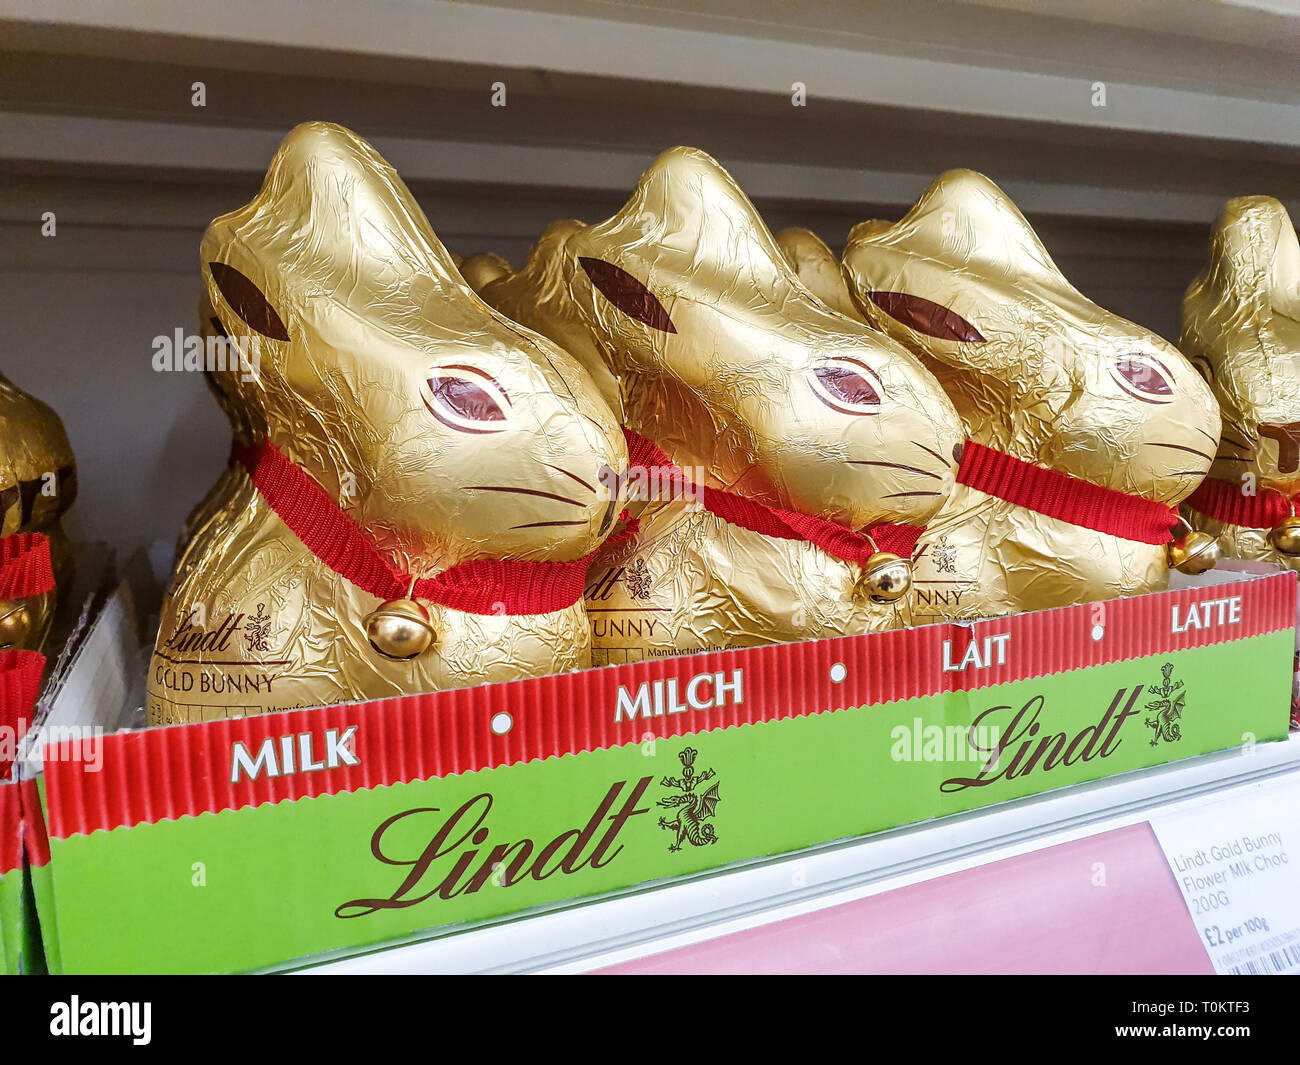 SHEFFIELD, UK - 20. MÄRZ 2019: Lindt gold Bunnys für den Verkauf in Vorbereitung auf Ostern in Sheffield Tesco Extra speichern Stockfoto